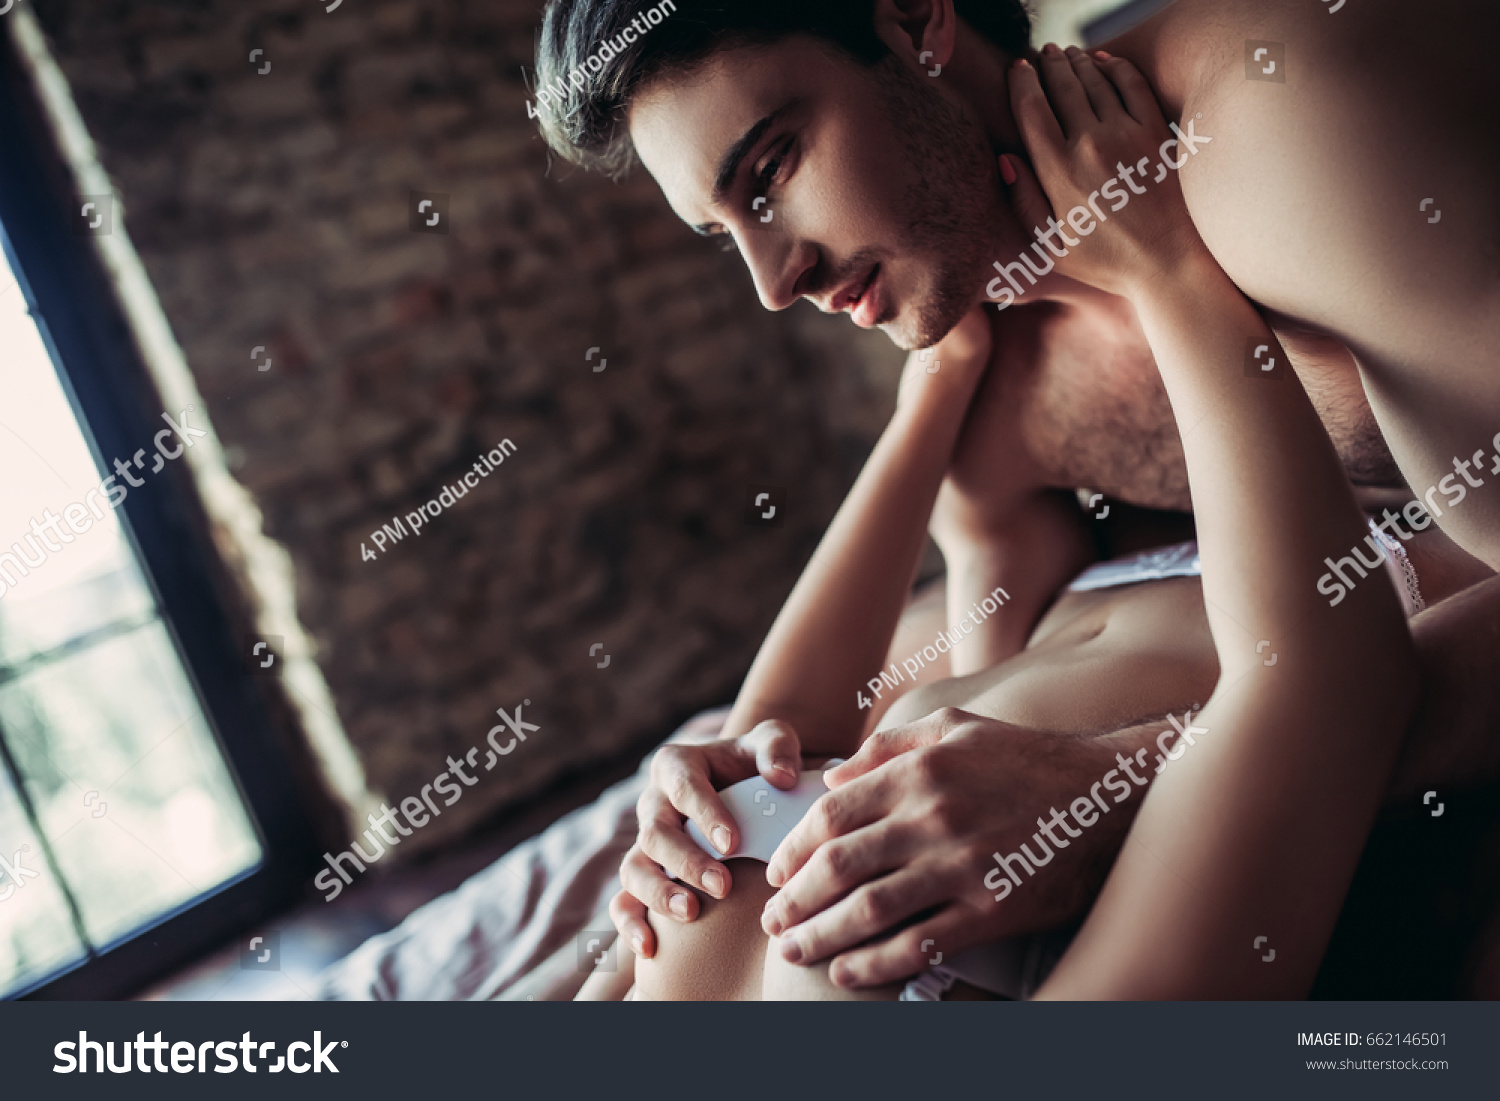 Breast love sex